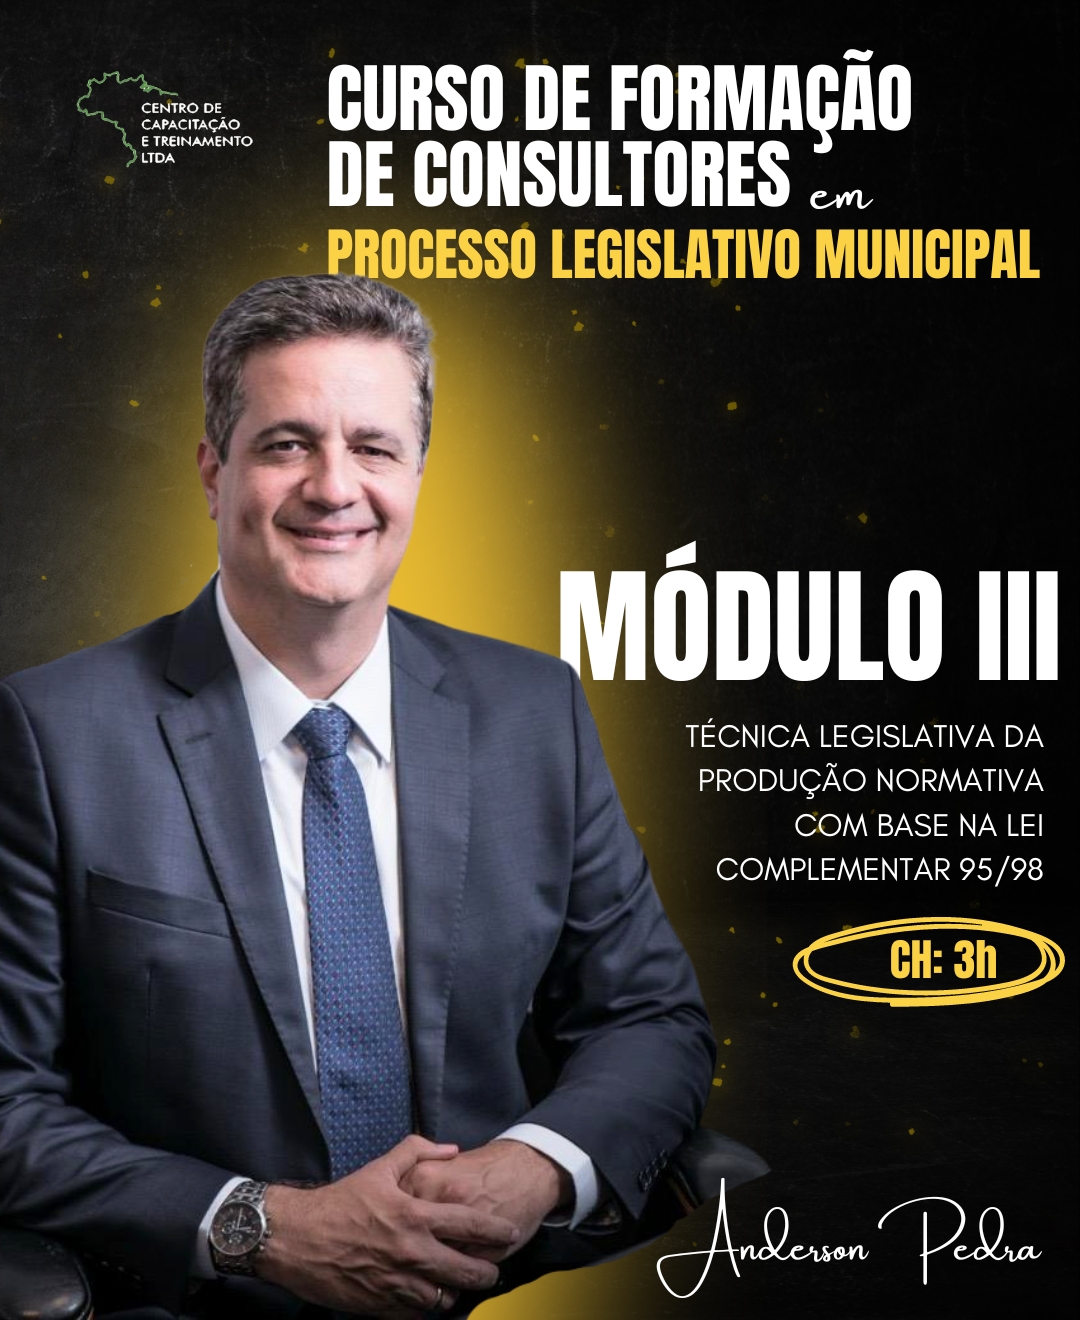 MÓDULO III - Técnica Legislativa da produção normativa com base na Lei complementar 95/98